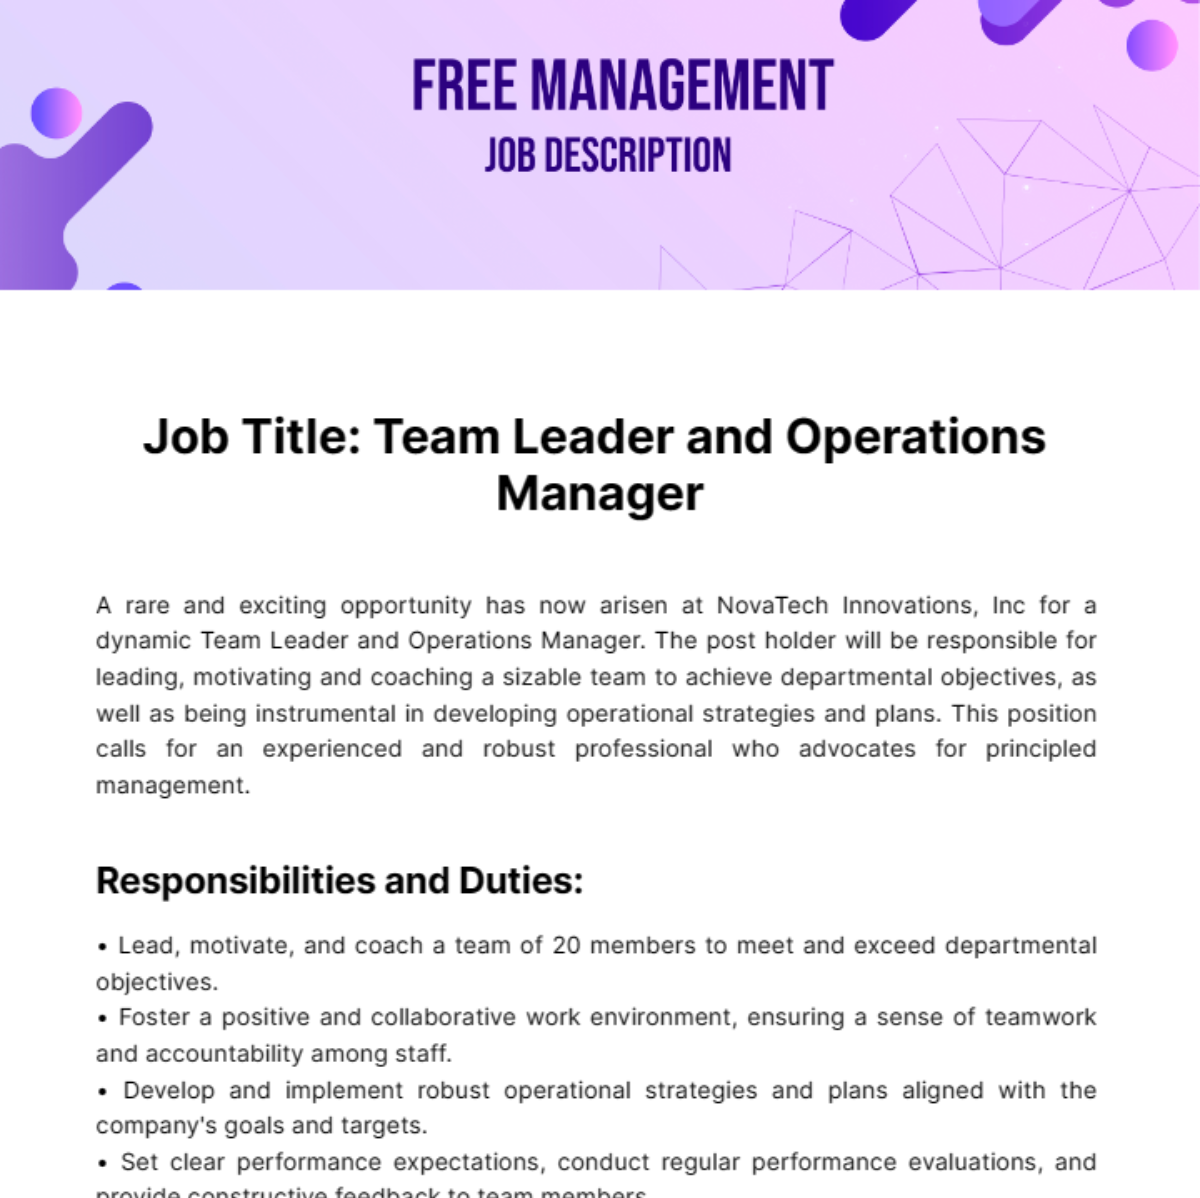 Free Management Job Description Template